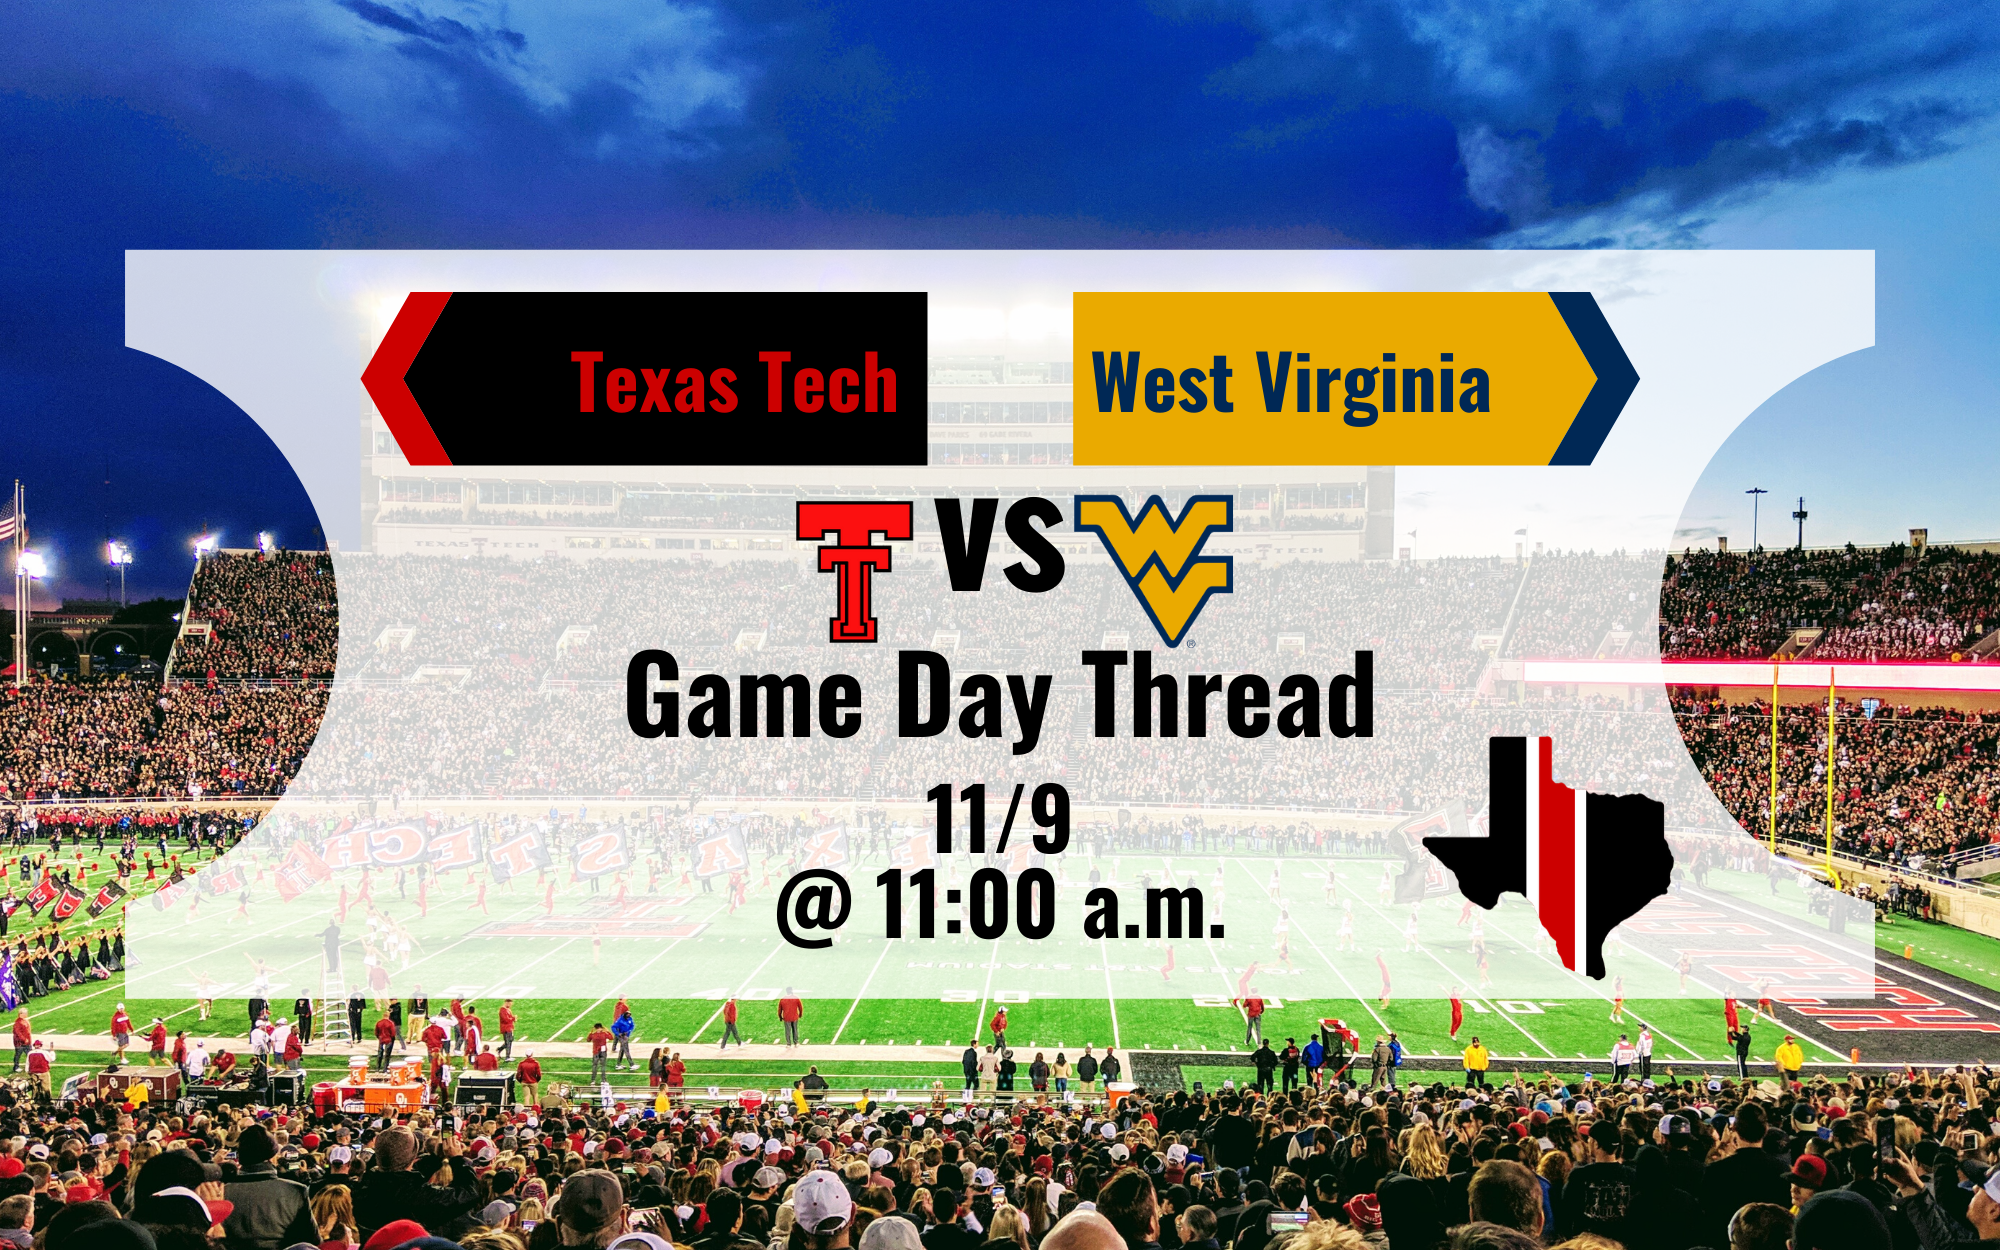 Game Day Thread 4: Texas Tech vs. West Virginia